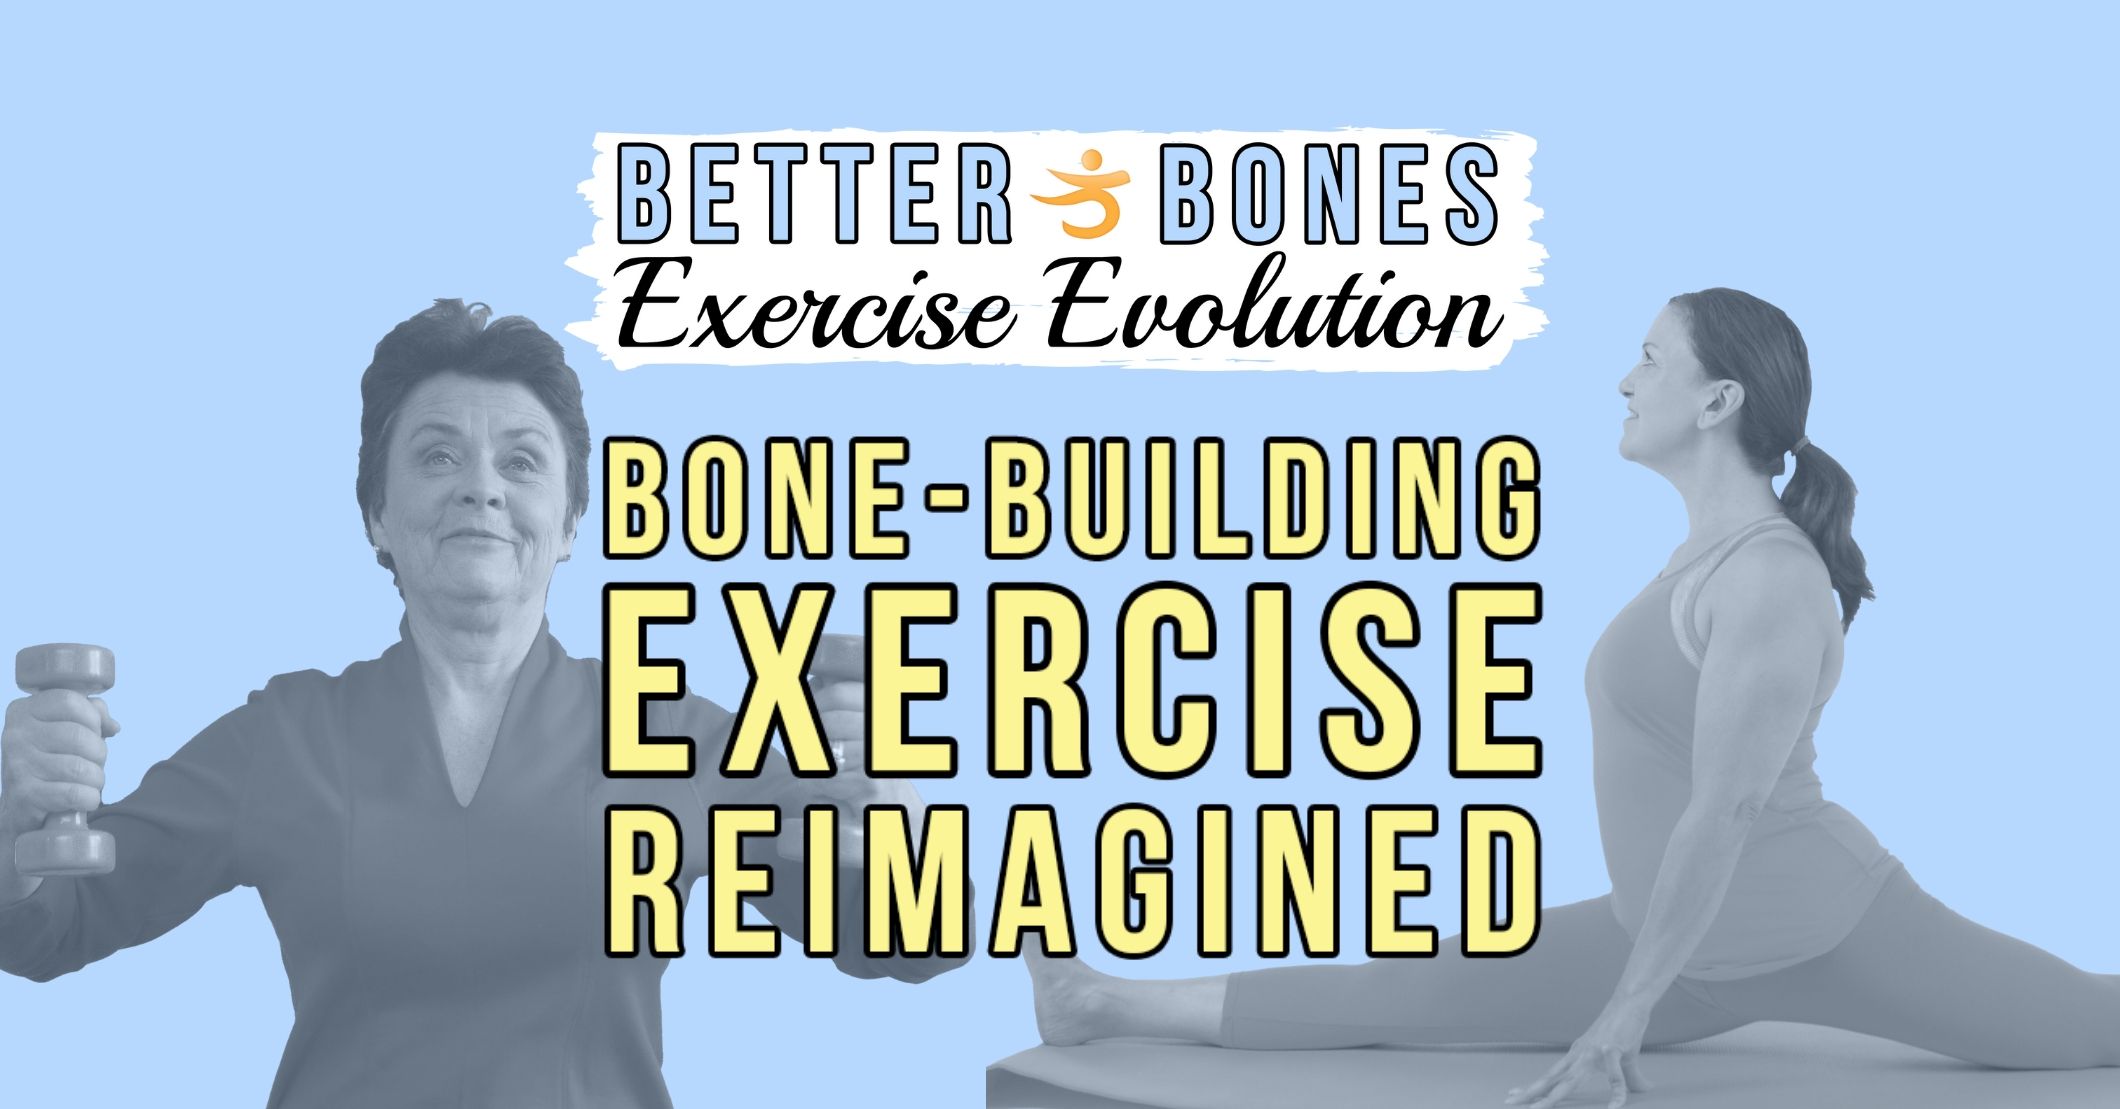 Better Bones Exercise for Osteoporosis Program - Better Bones, Better Body